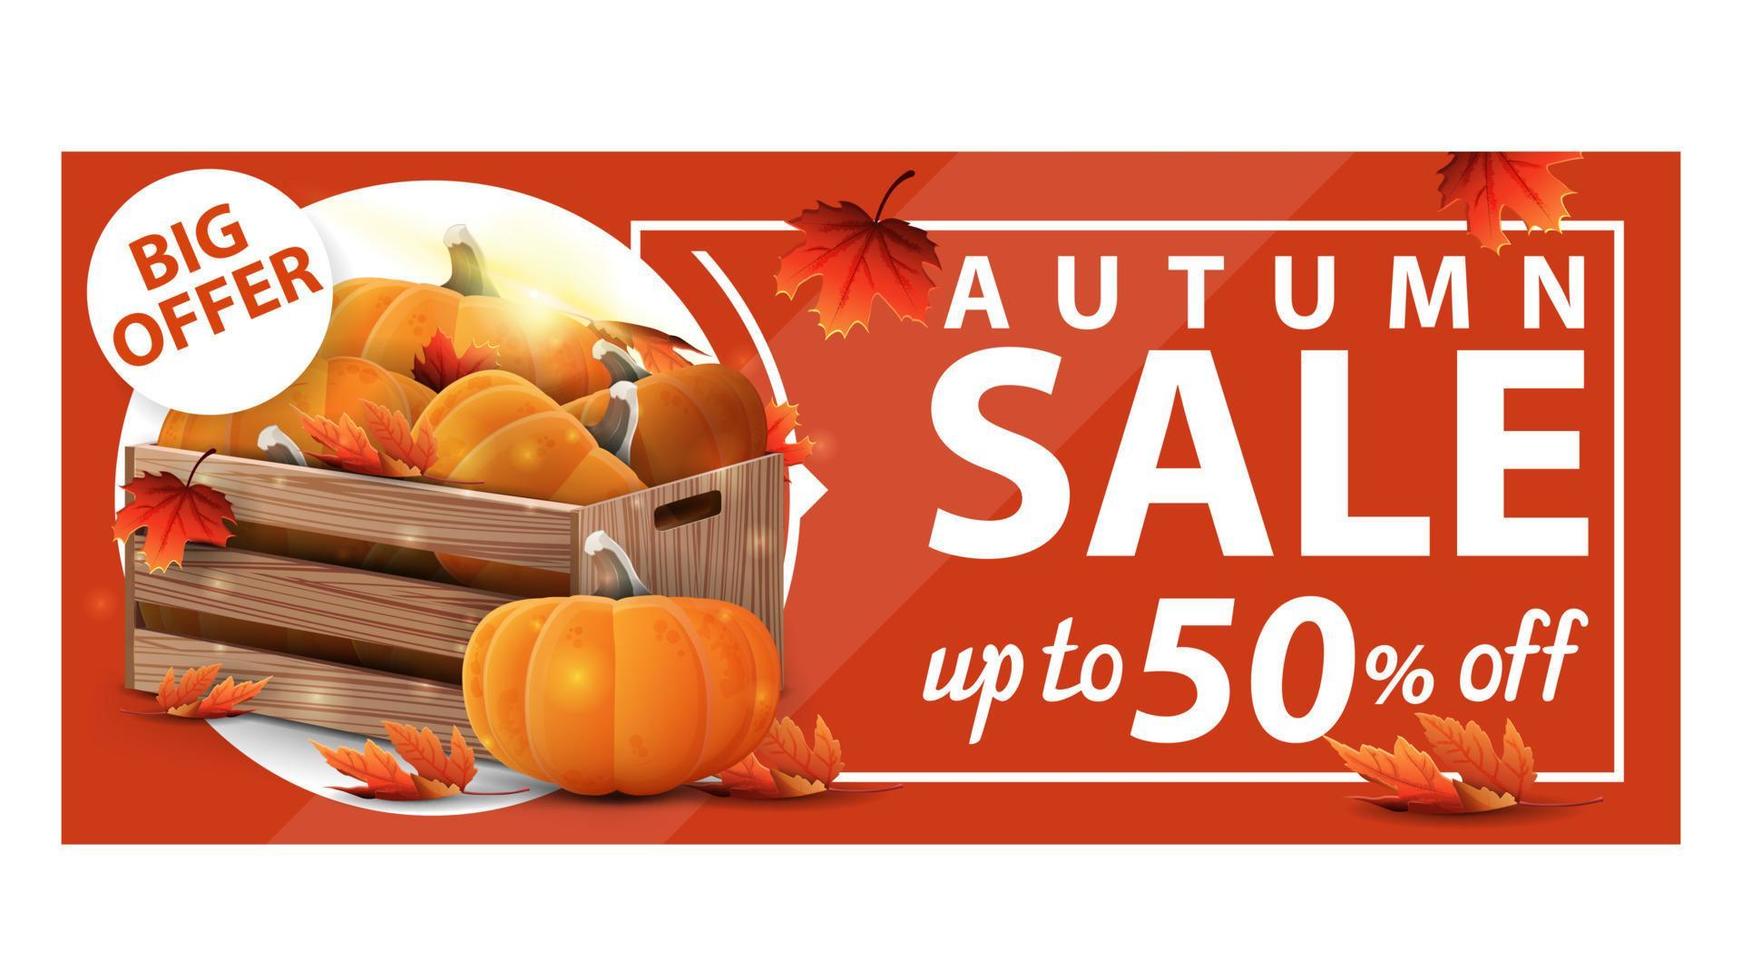 promoção de outono, até 50 de desconto, banner laranja da web com desconto com caixas de madeira com abóboras maduras e beirais de outono vetor